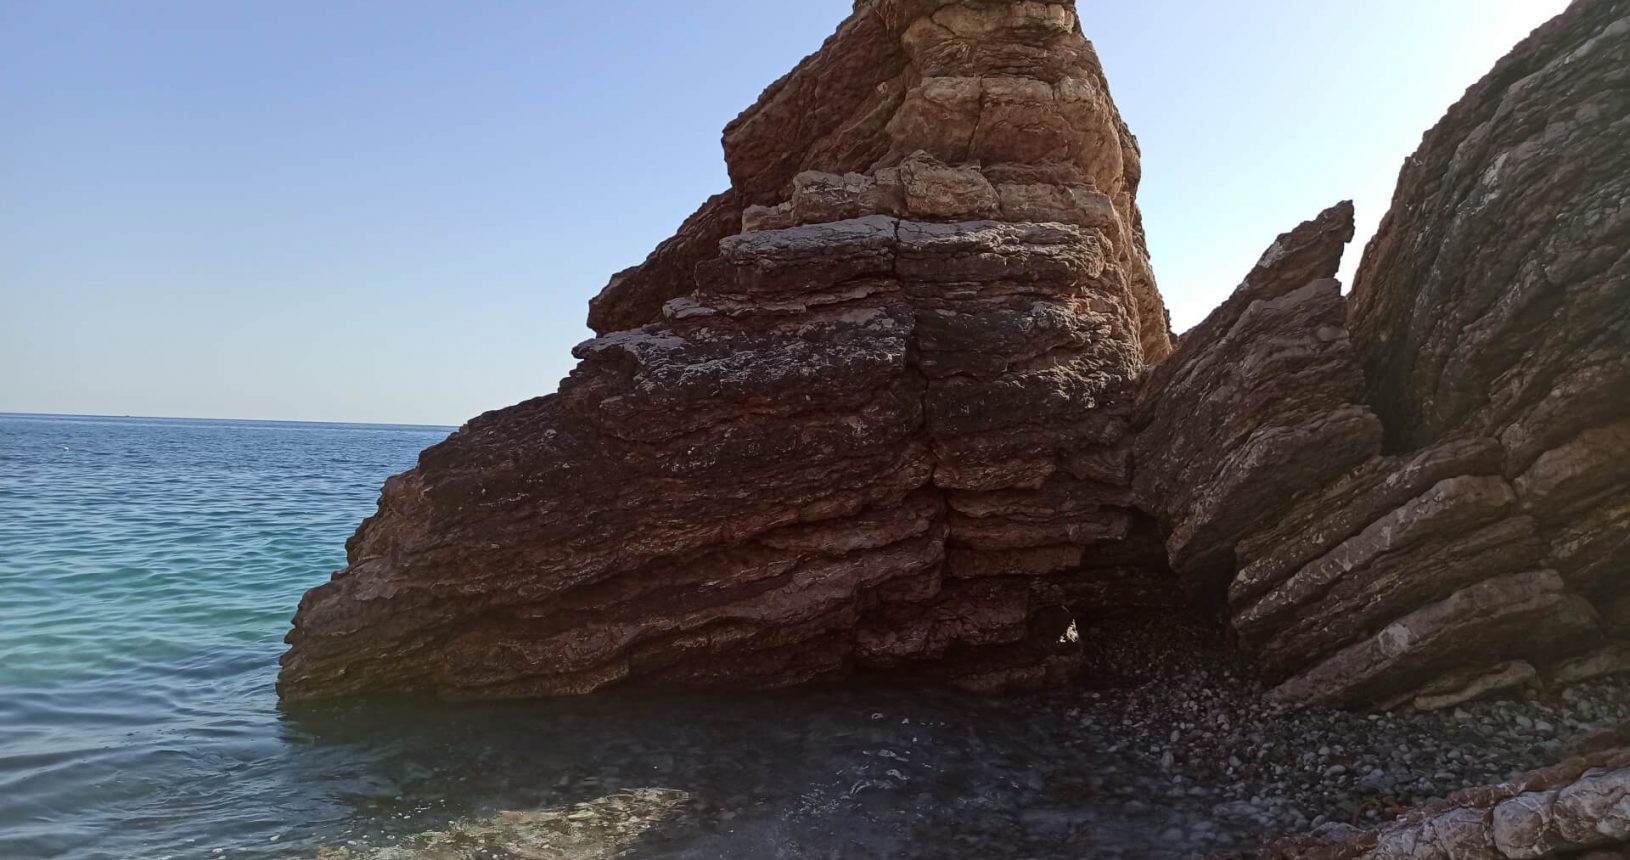 Big pretty rocks at the sea at Rafailovici rocky beach